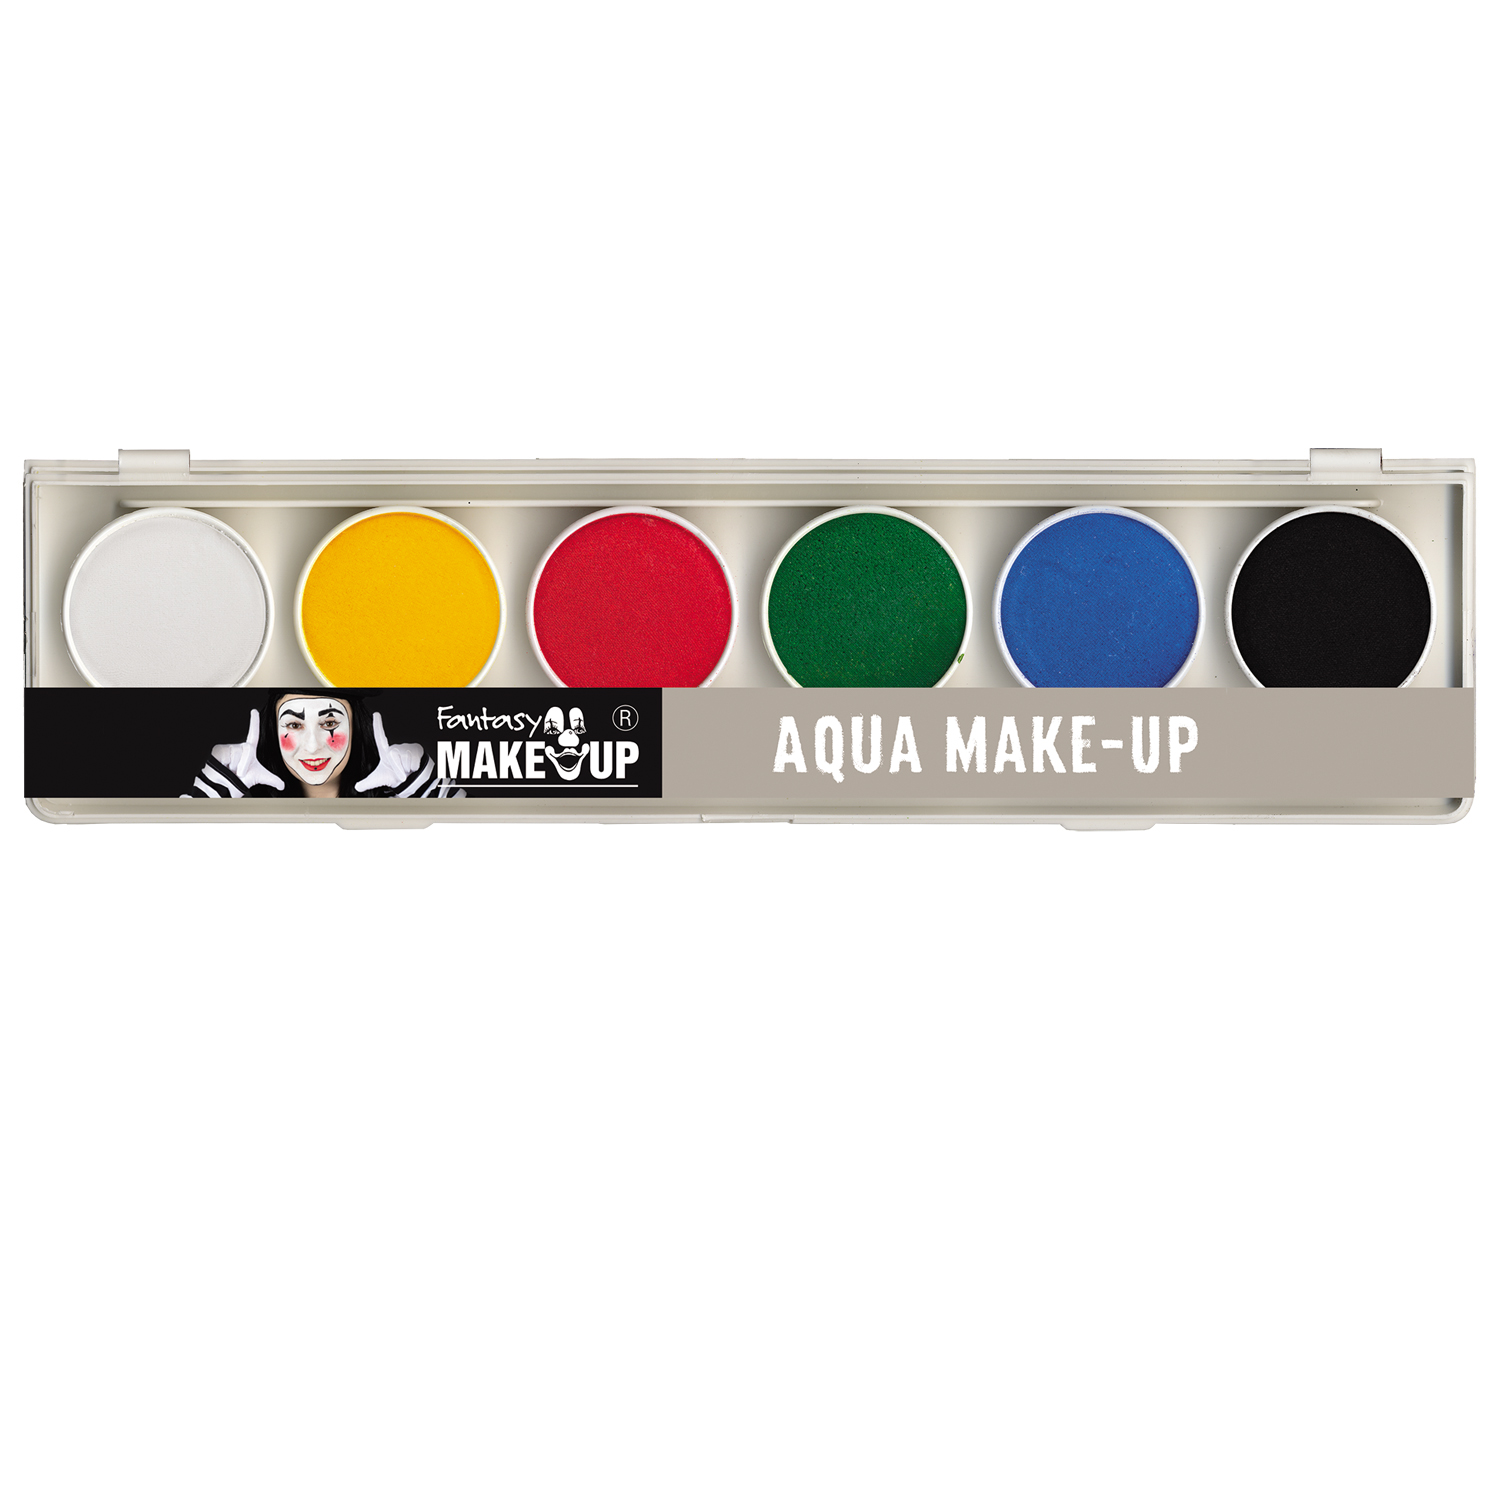 NEU Fantasy Aqua-Make-Up Schminke auf Wasserbasis, Malkasten mit Pinsel, 6 Farben